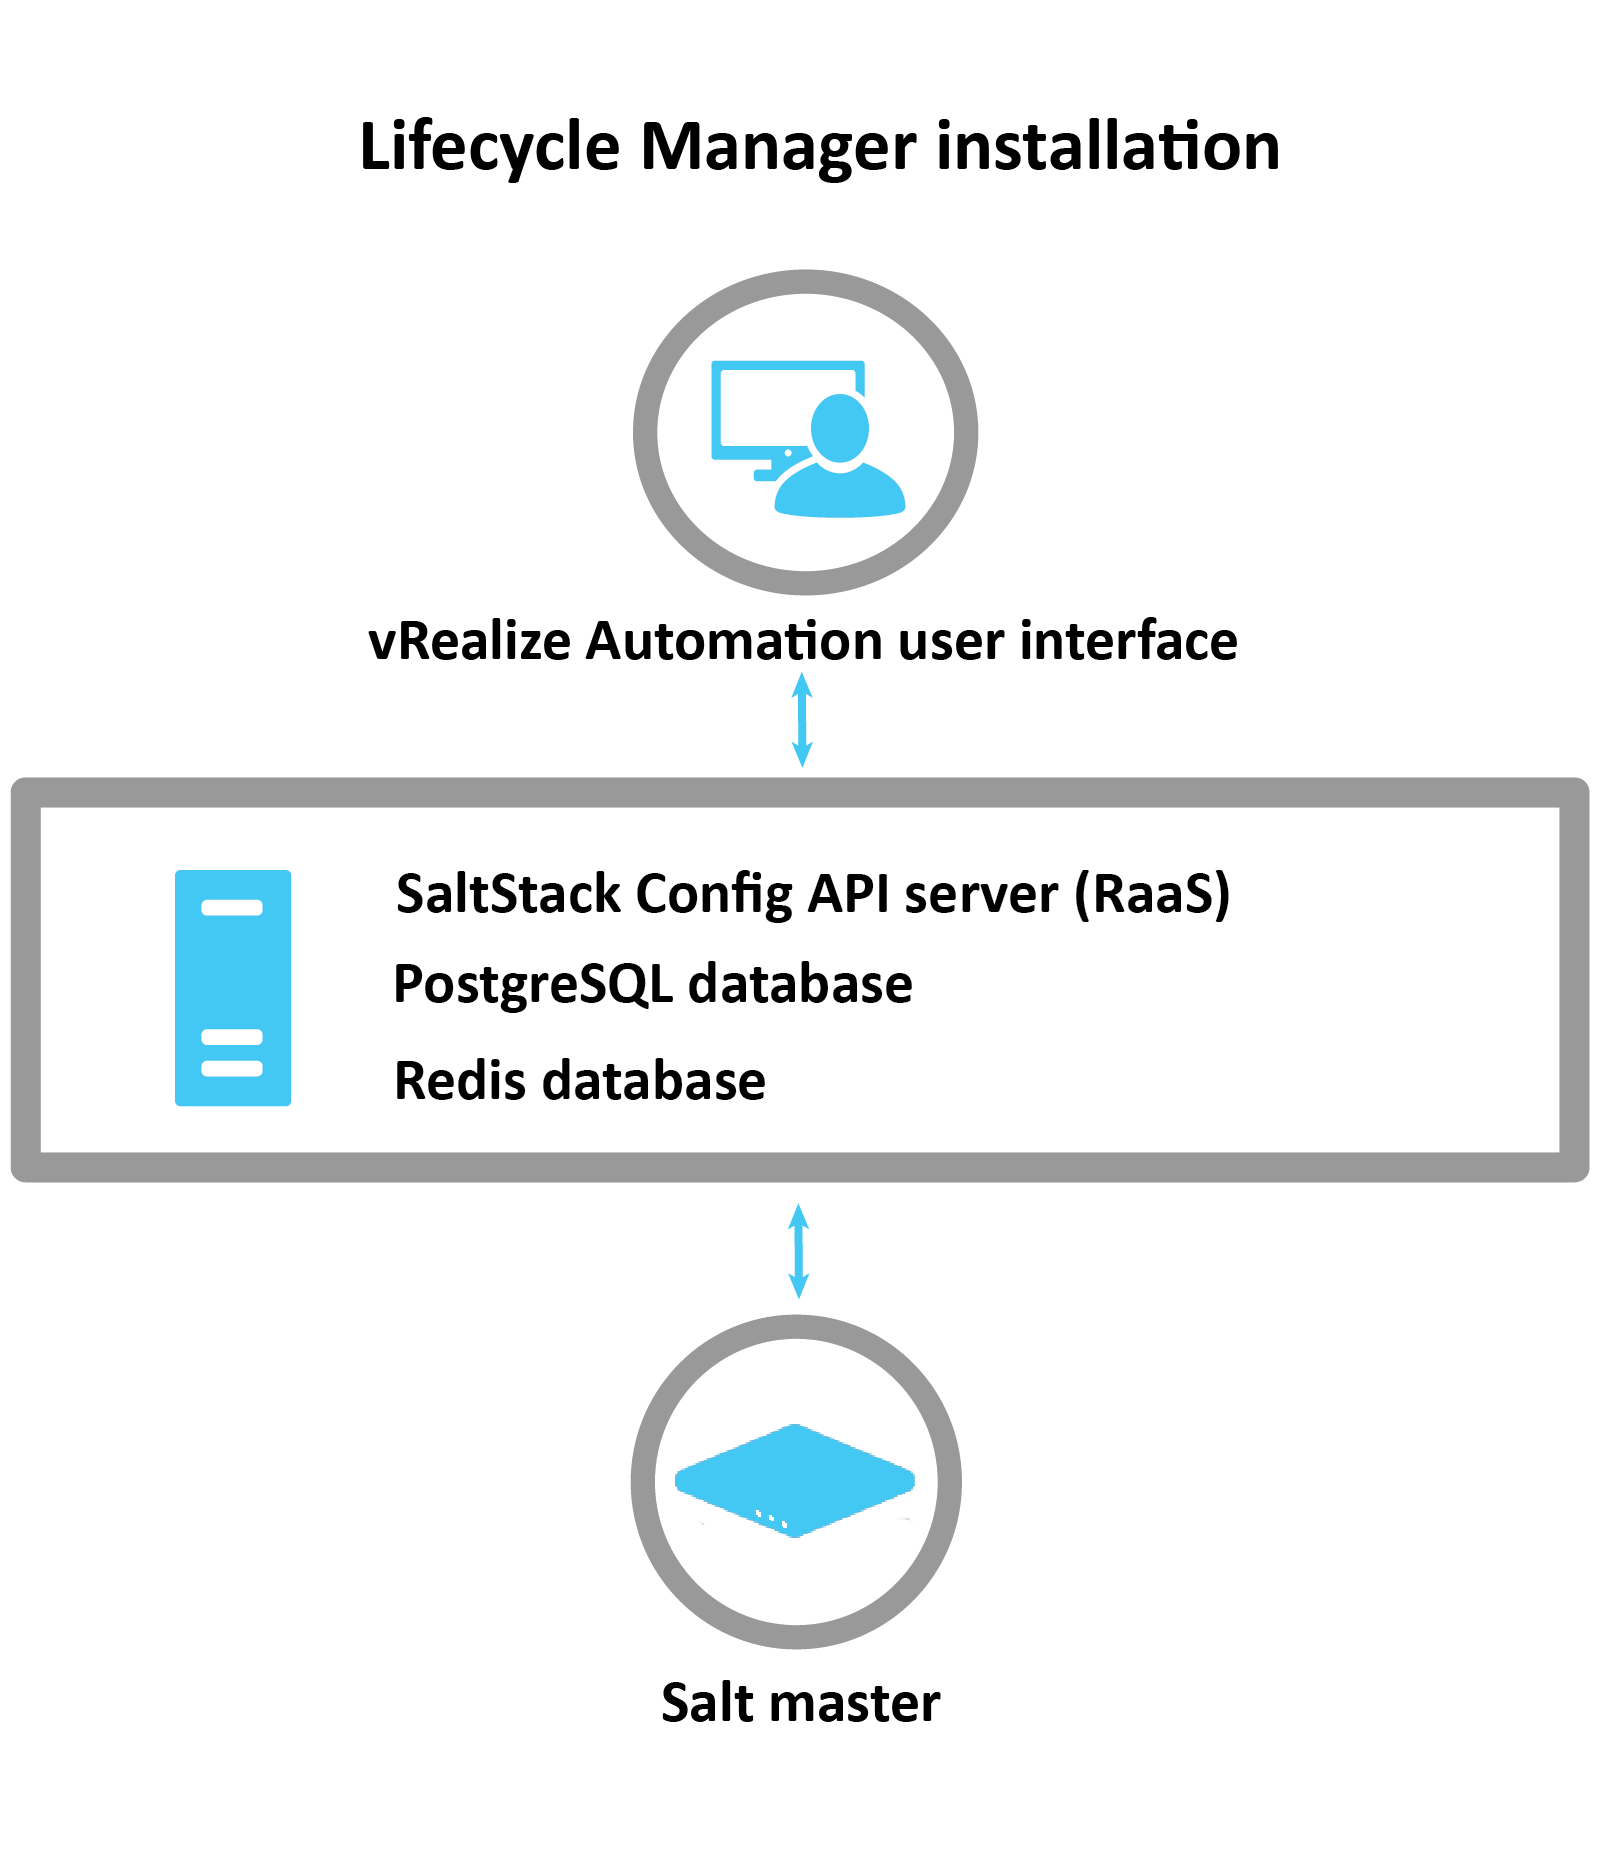 Diagramma che spiega come viene installata SaltStack Config tramite LCM: LCM utilizza l'interfaccia di vRA per installare il server RaaS, il database Postgres e il database Redis. Dopo l'installazione, Salt Master viene configurato.